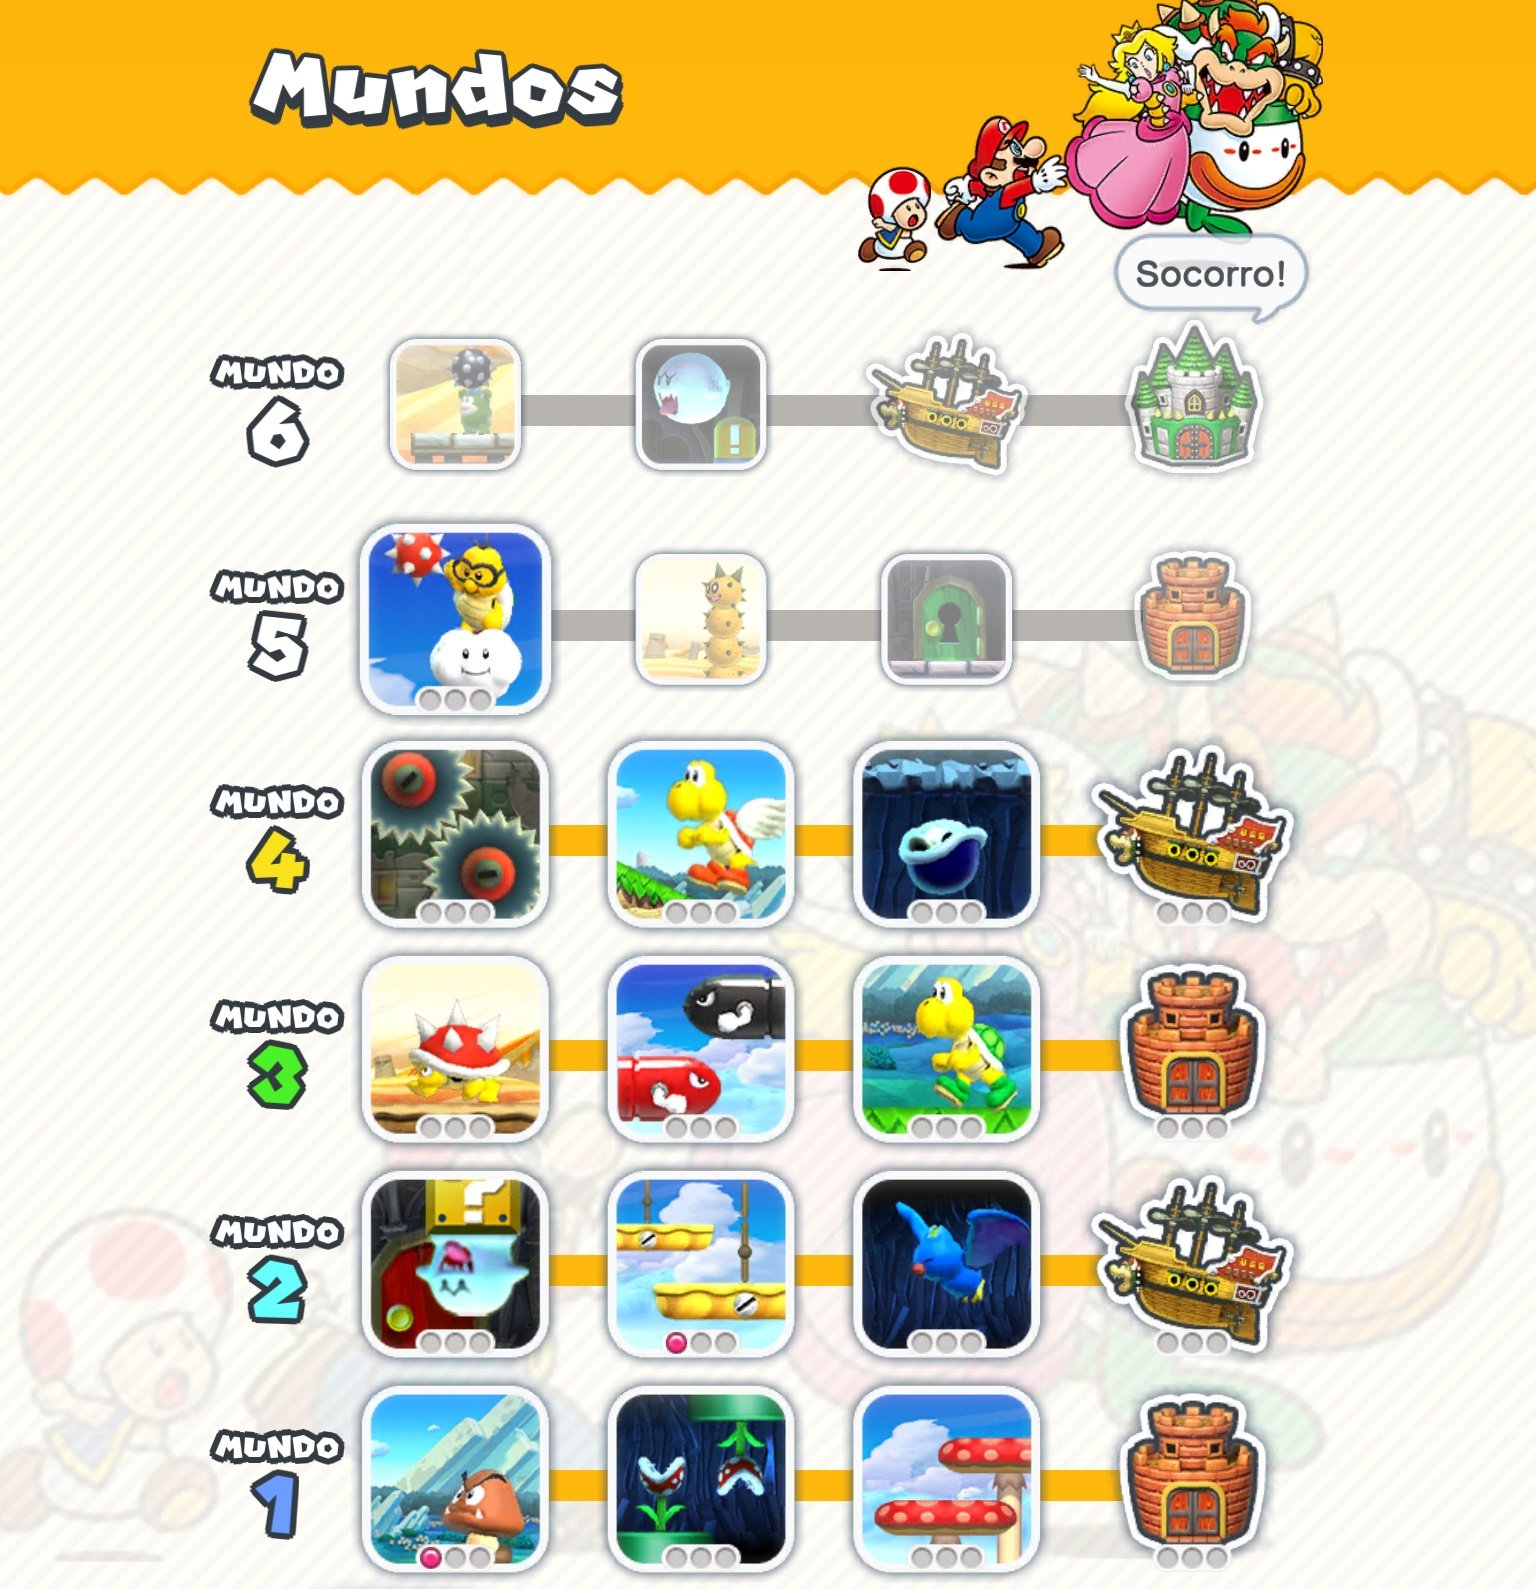 Super Mario Run chega ao iOS em 15 de dezembro, por US$ 10